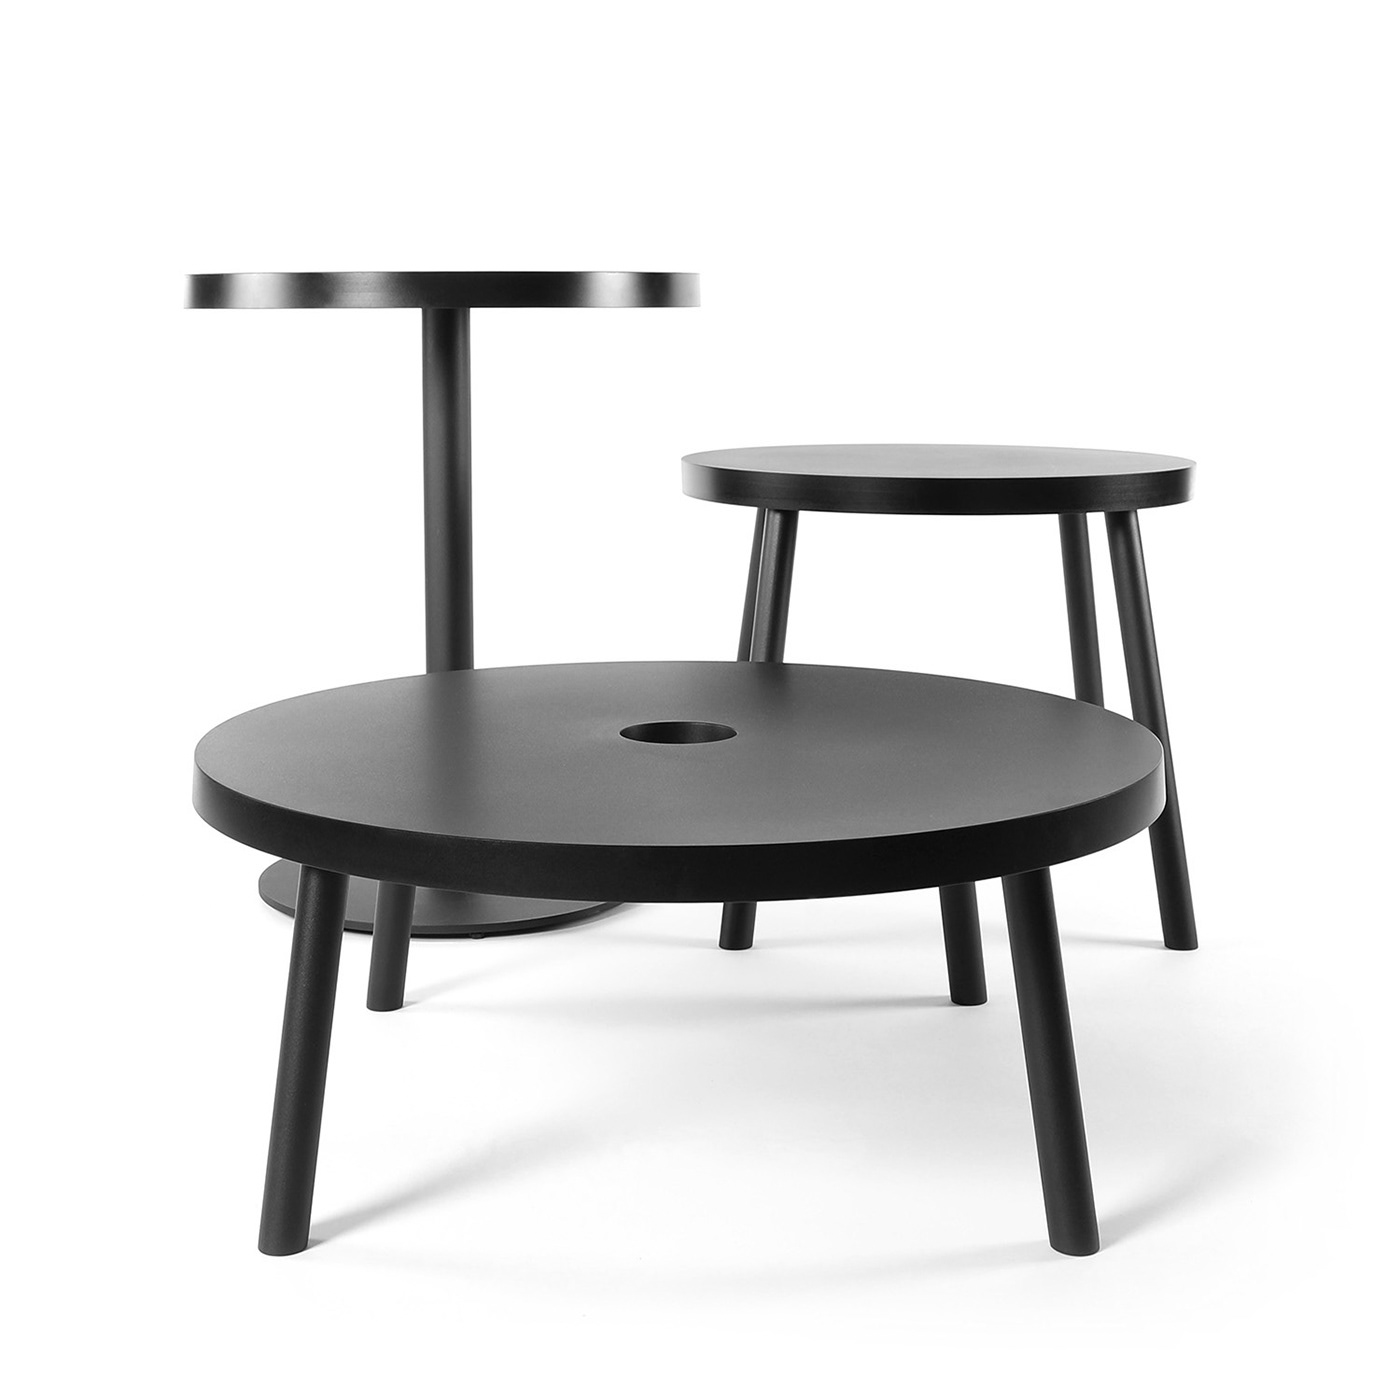 ukraine table coffeetable plastic steel minimalistic cafe